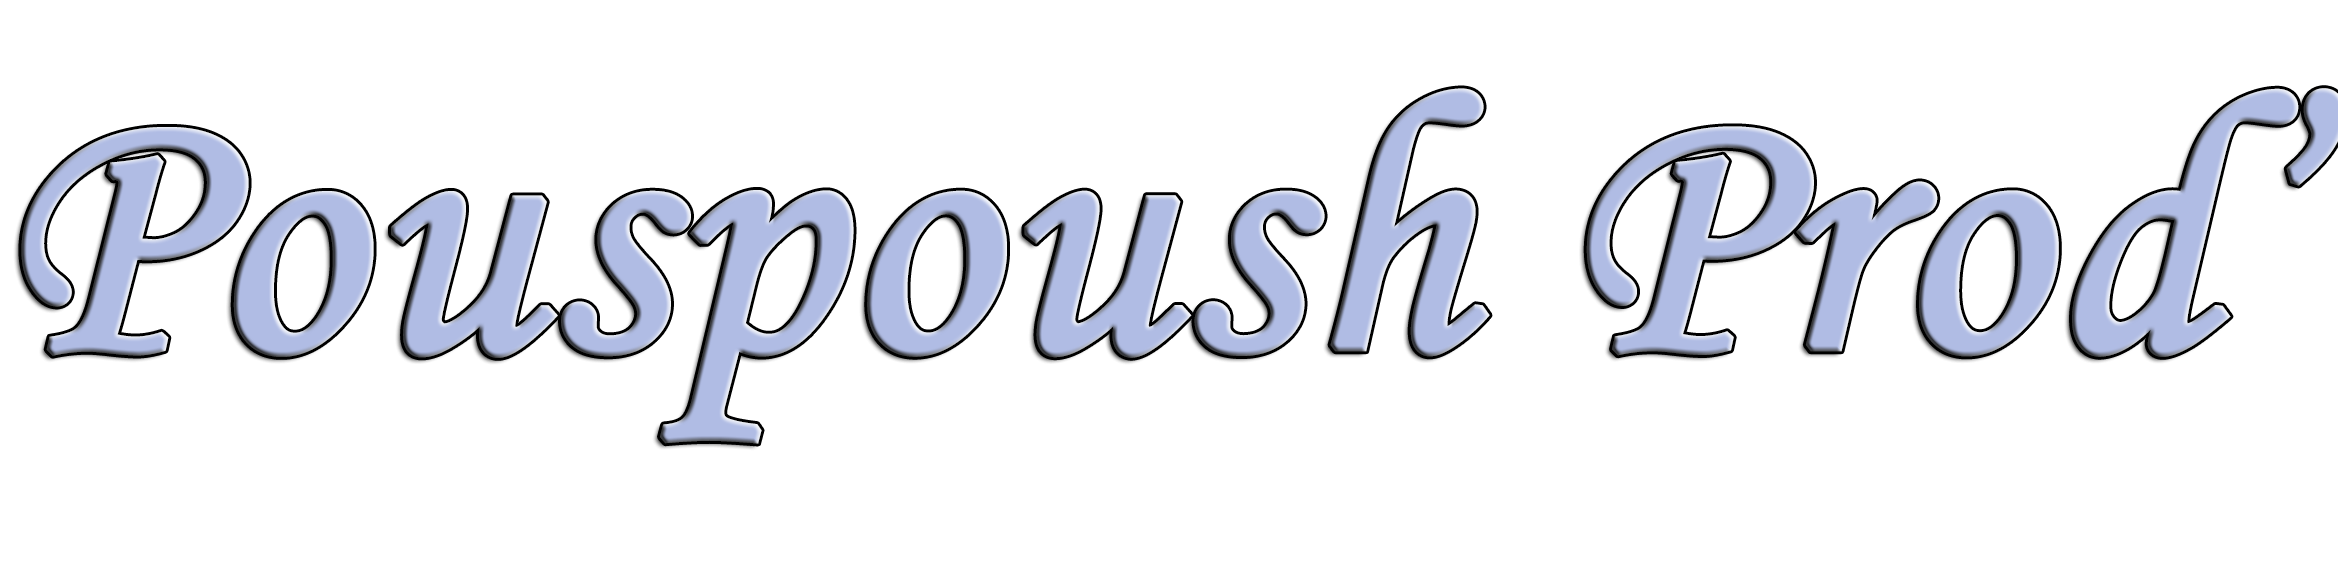 Pouspoush Prod'